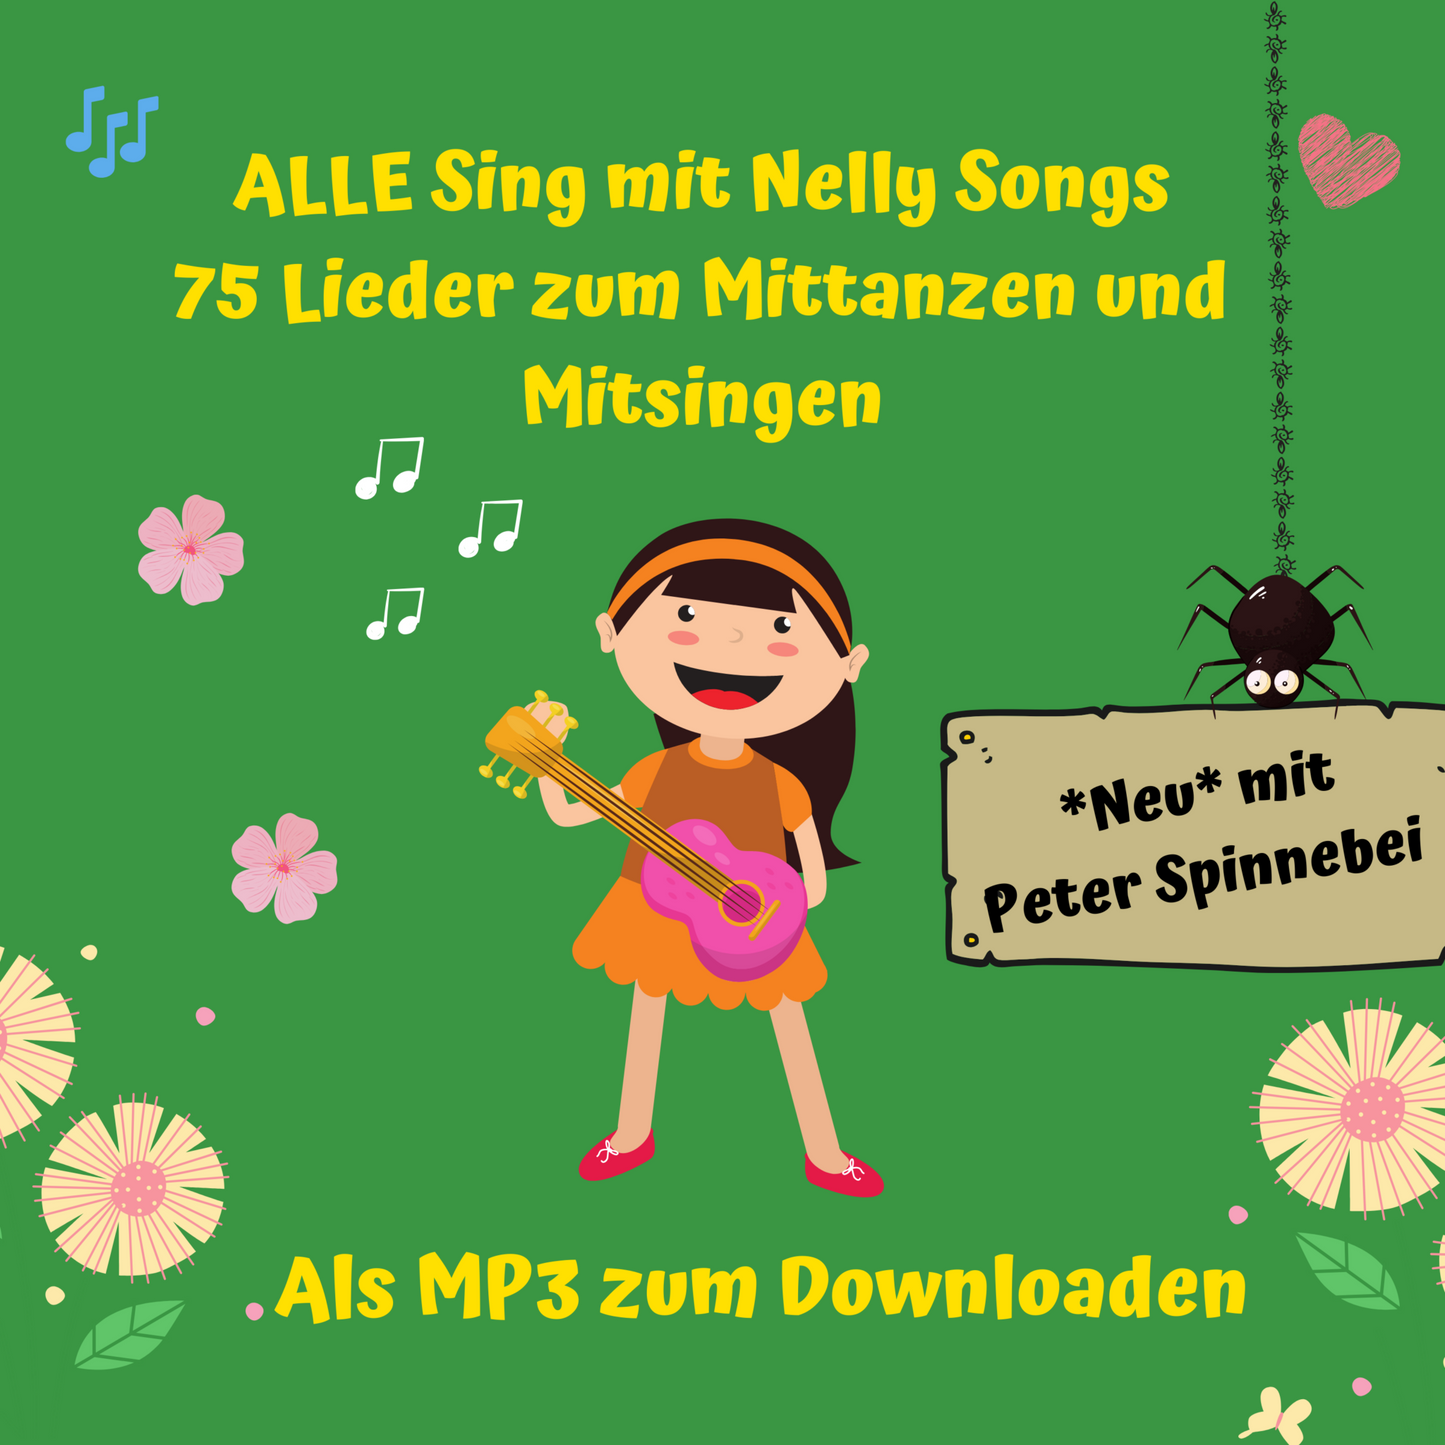 Sing mit Nelly Alle Songs (Ausser die Weihnachtslieder)